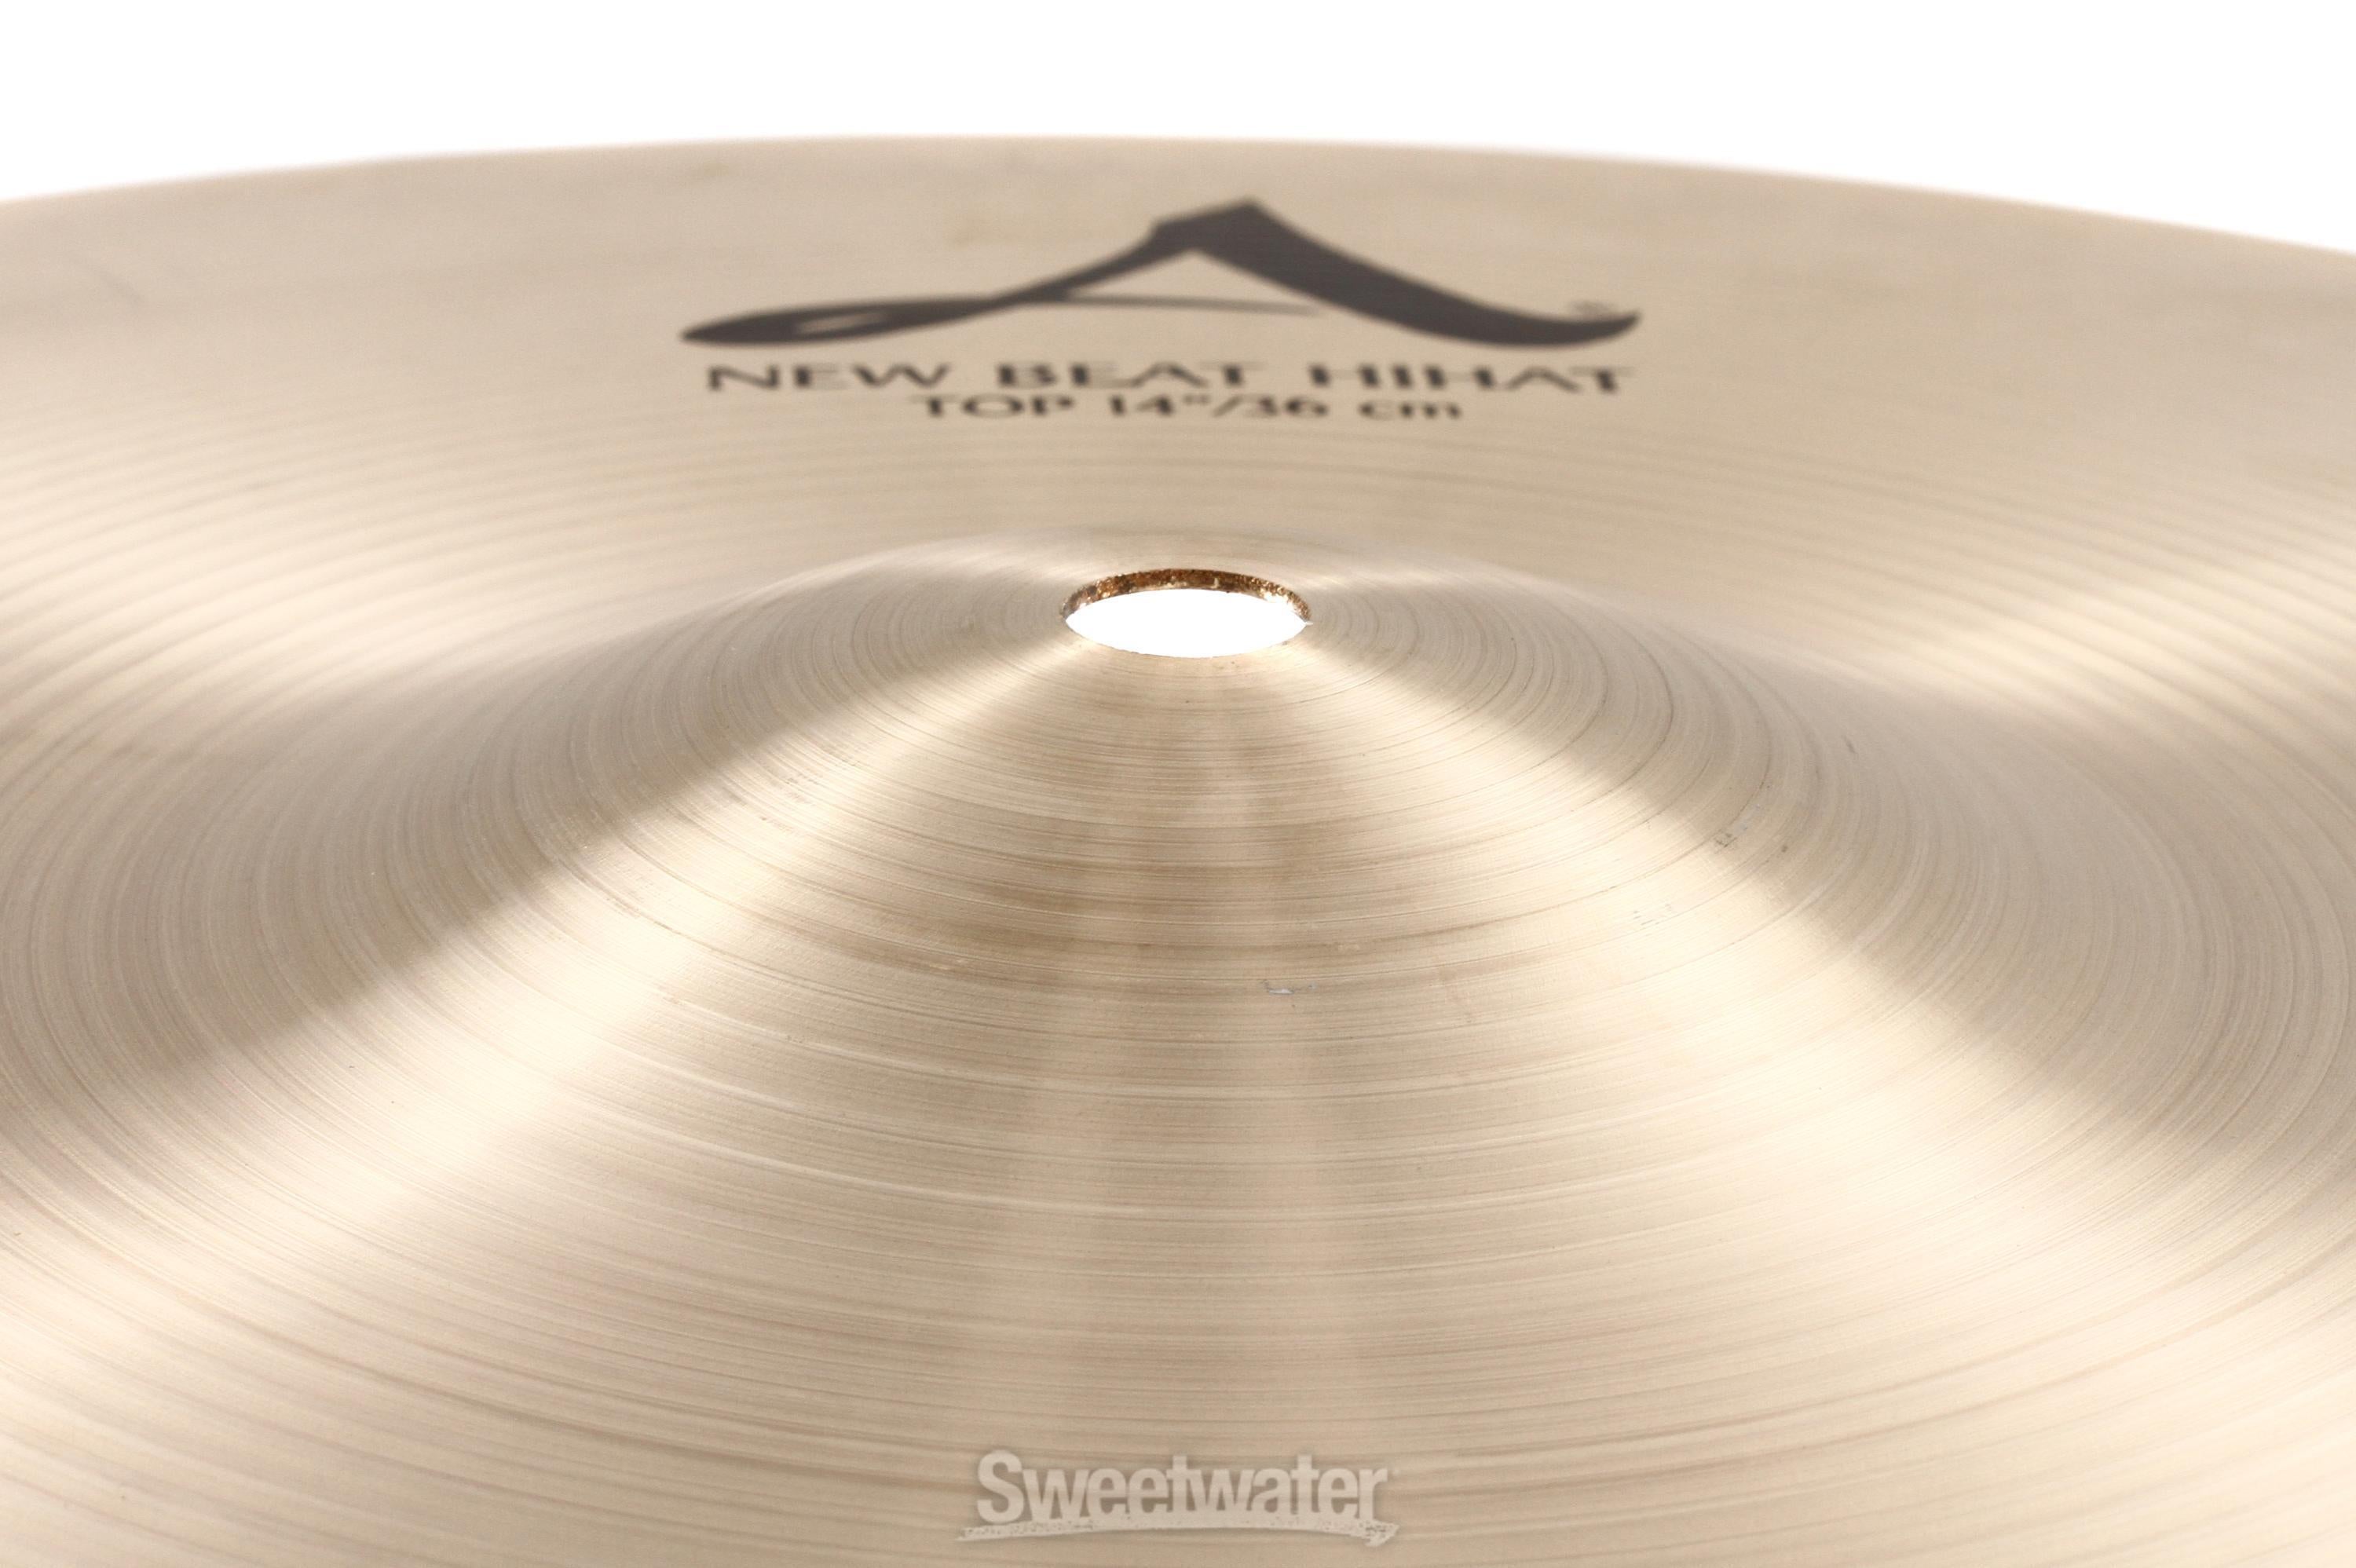 Zildjian 14 inch A Zildjian New Beat Hi-hat Cymbals | Sweetwater